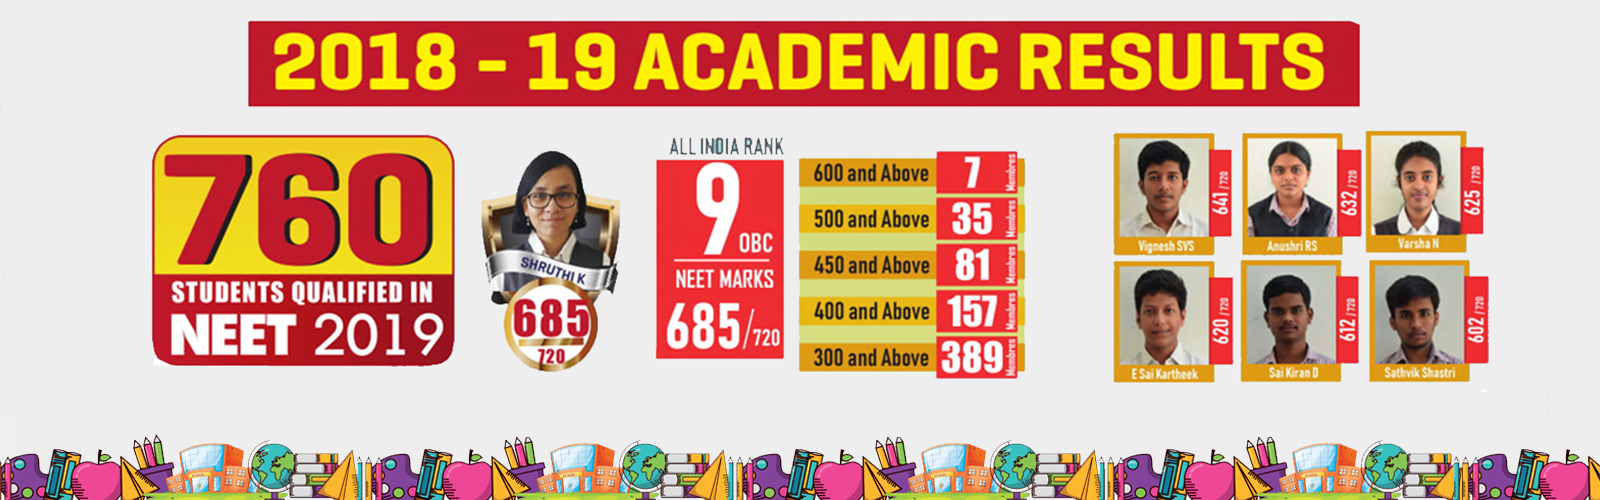 Velammal 2018 - 2019 Academic Results